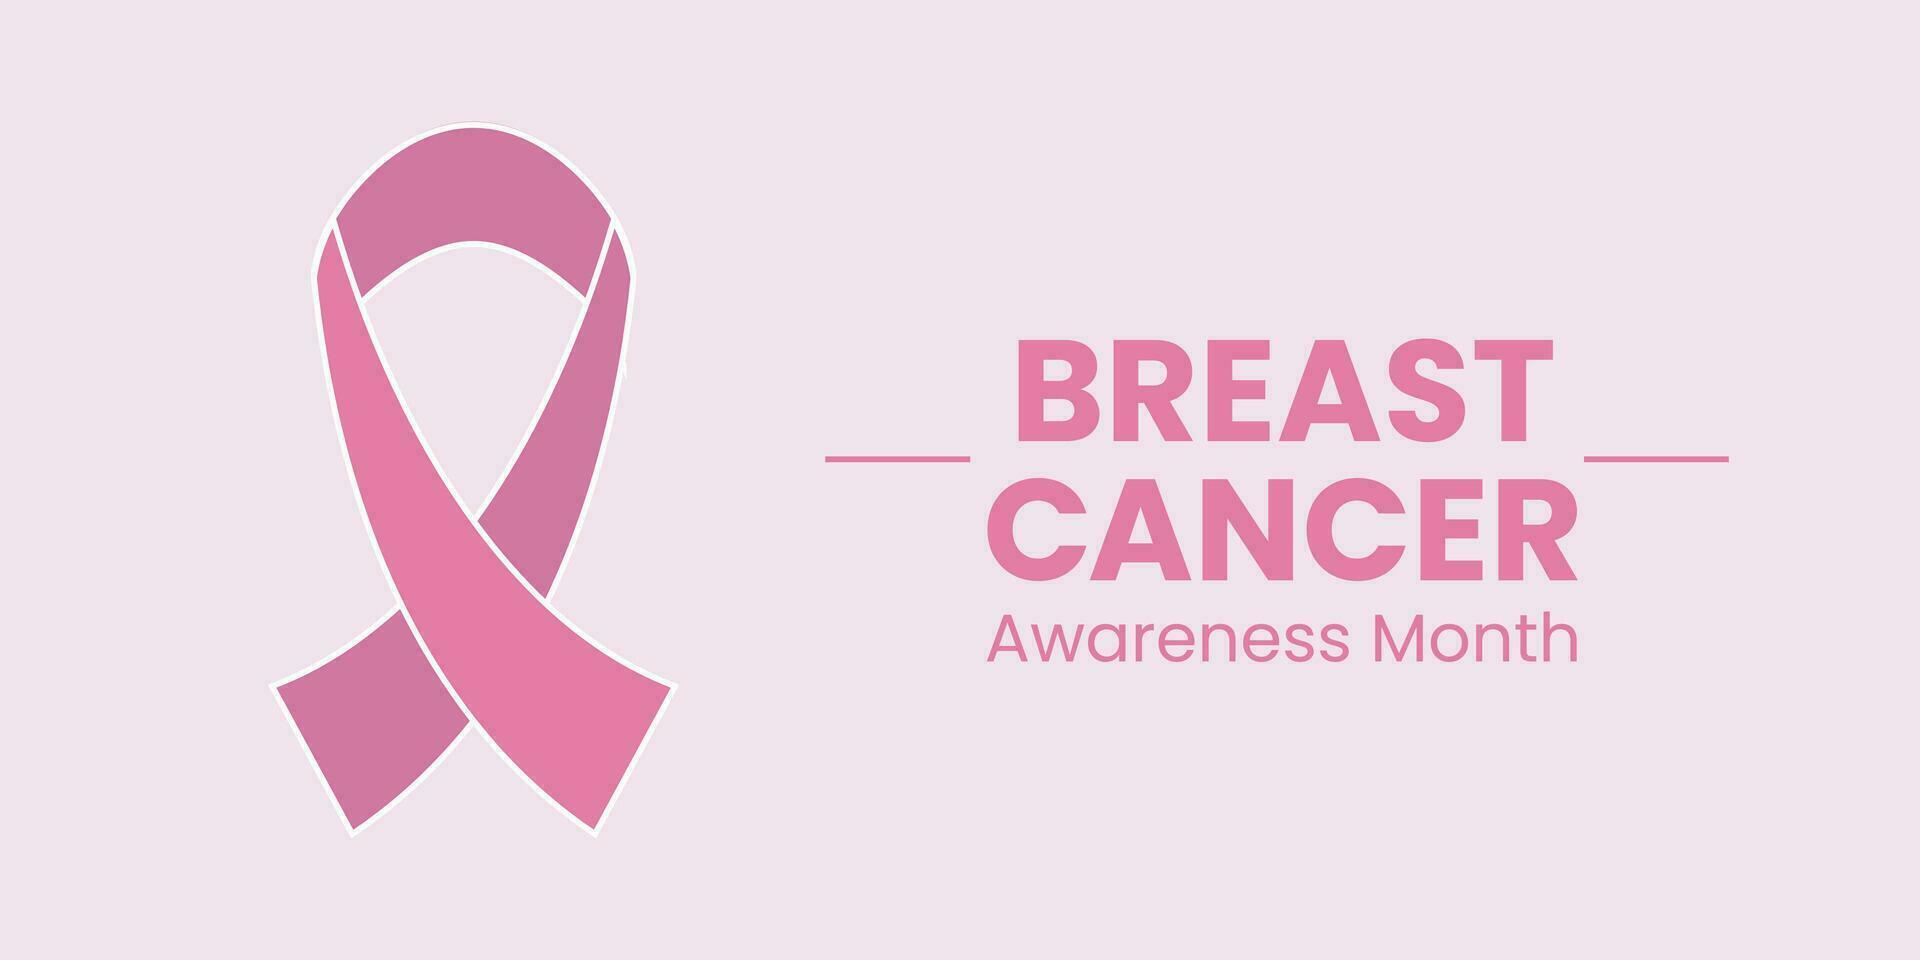 bröst cancer vektor baner, affisch för social media använda sig av. oktober bröst cancer emblem tecken för medvetenhet månad med rosa band symbol. realistisk rosa band. affisch mall. vektor illustration.